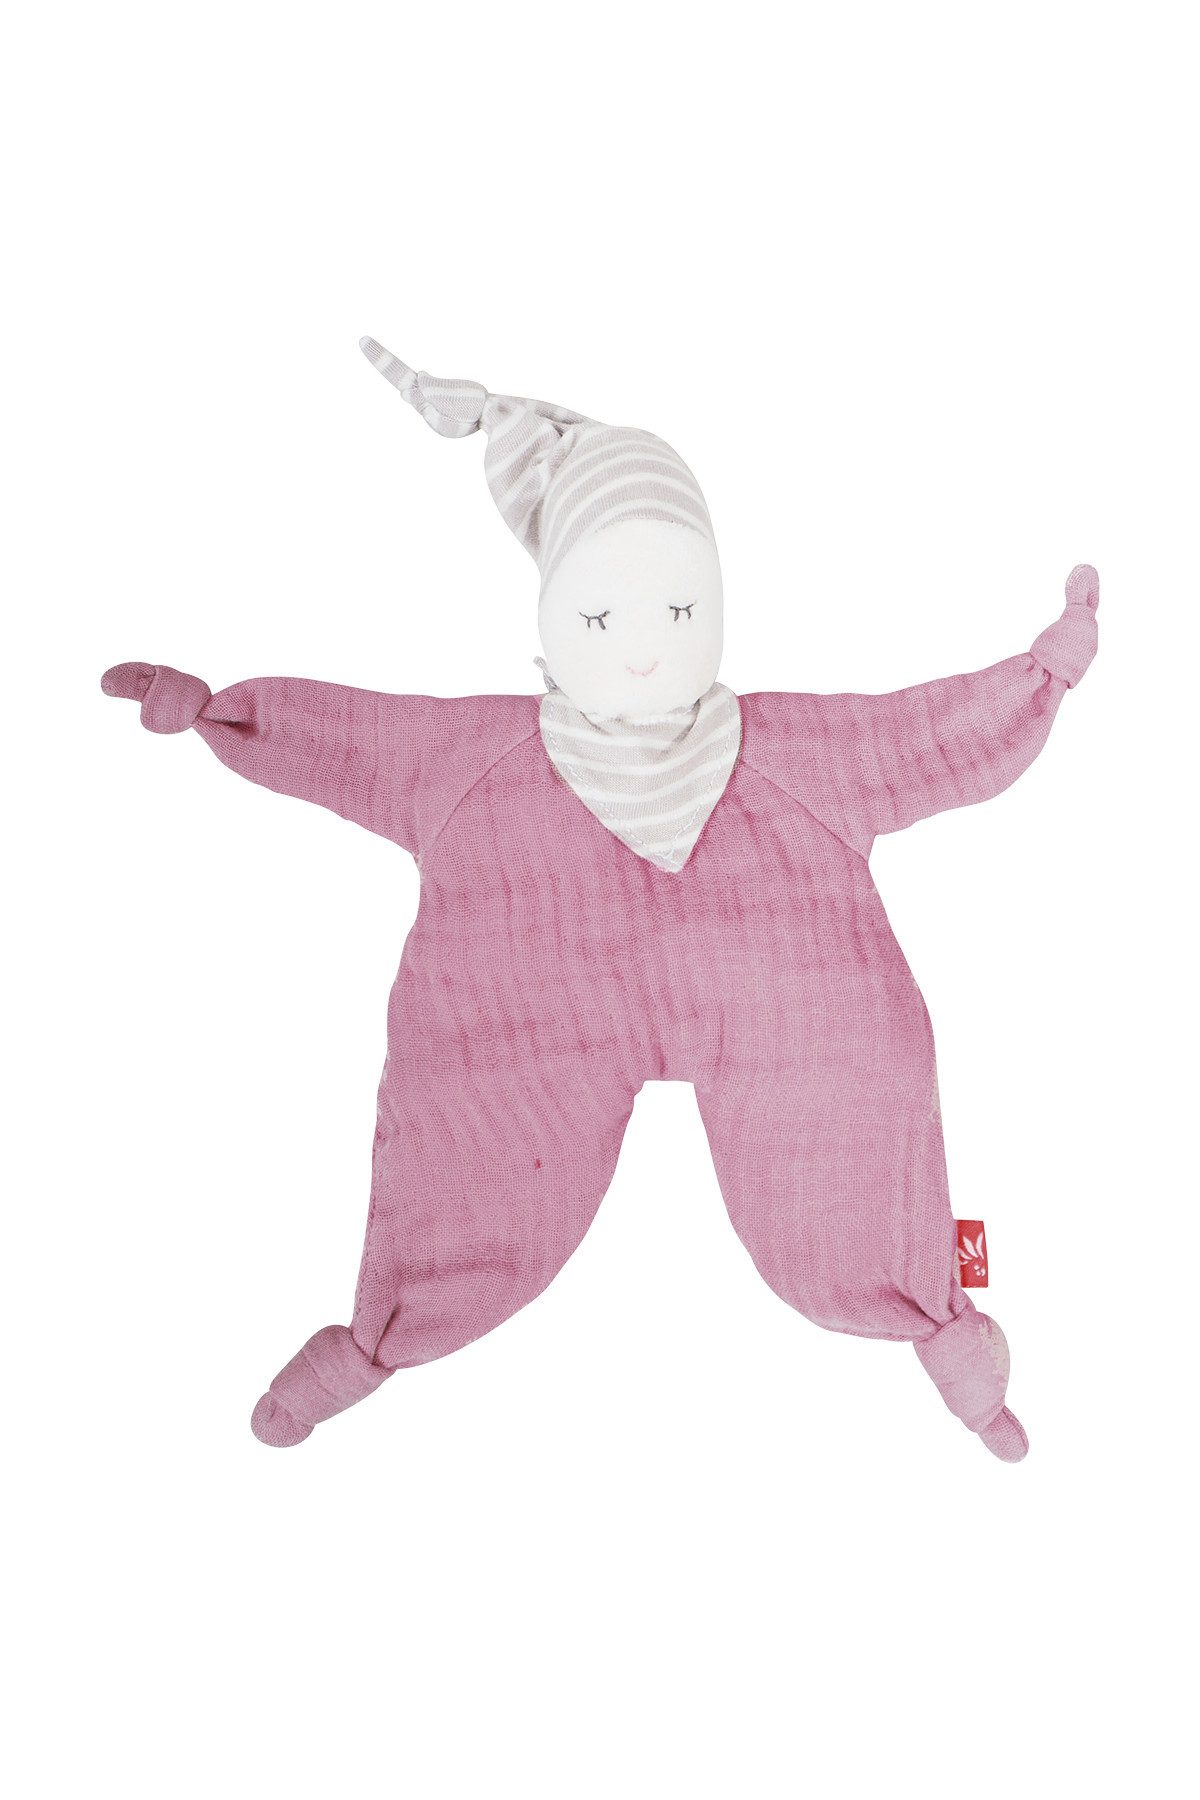 kikadu Babypuppe, Pink, weich und kuschelig aus Bio-Baumwolle.